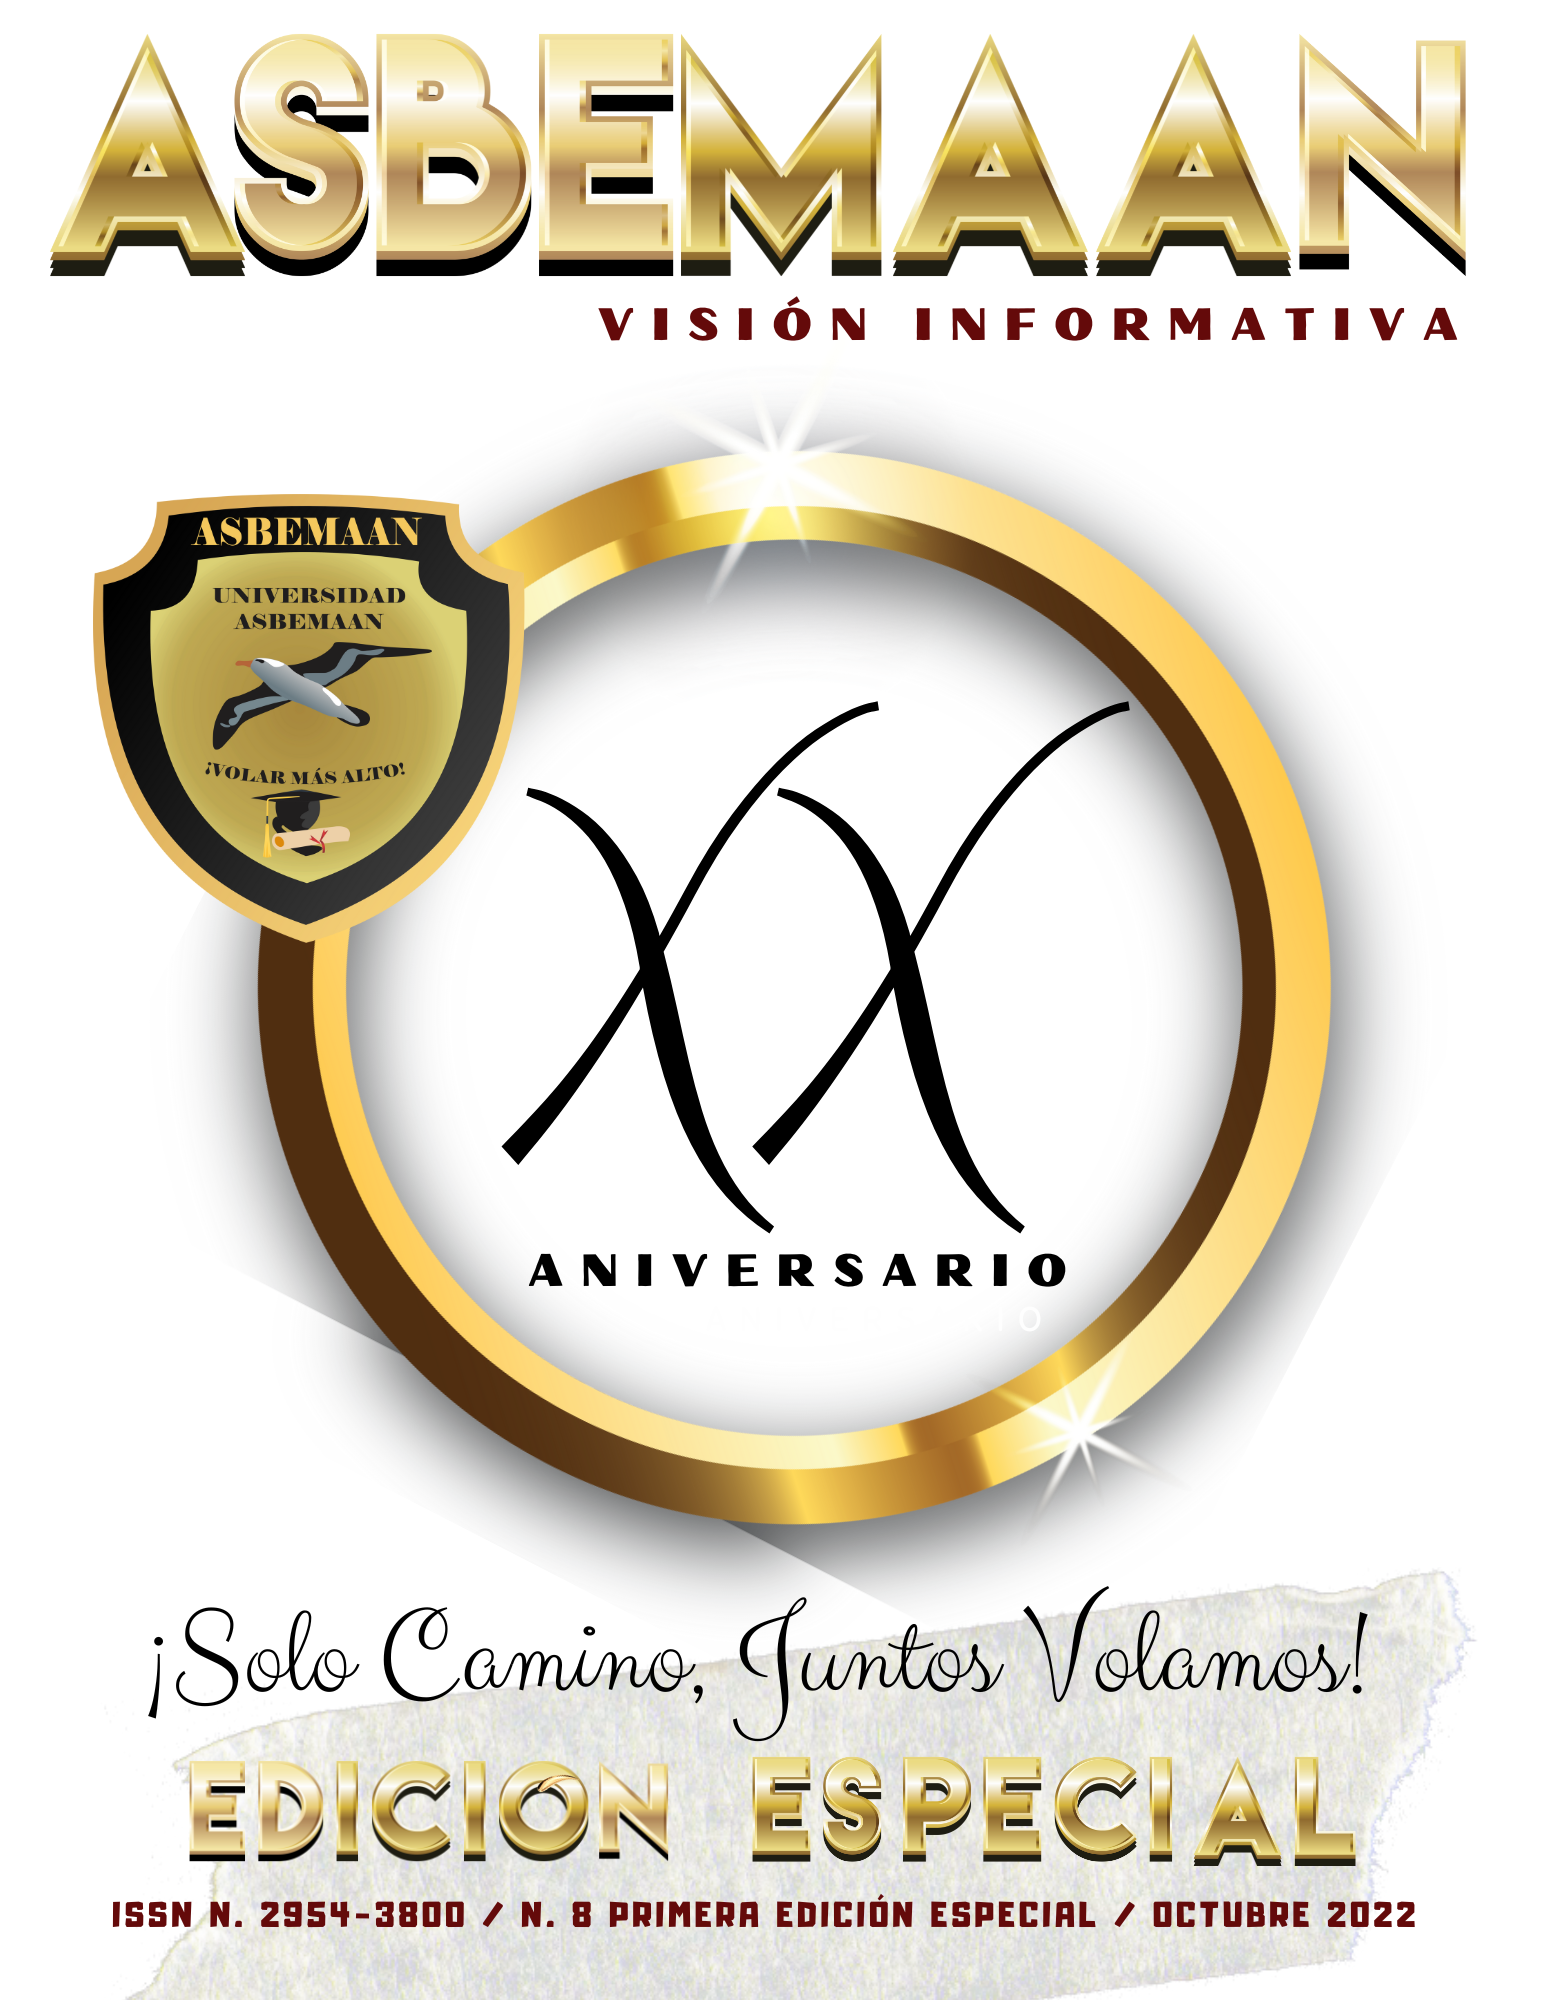 Edición: Año 2022 / Revista No. 8 Primera Edición Especial / Octubre 2022 / ISSN: N. 2954-3800/ reserva No. 04-2021-100717303100-102